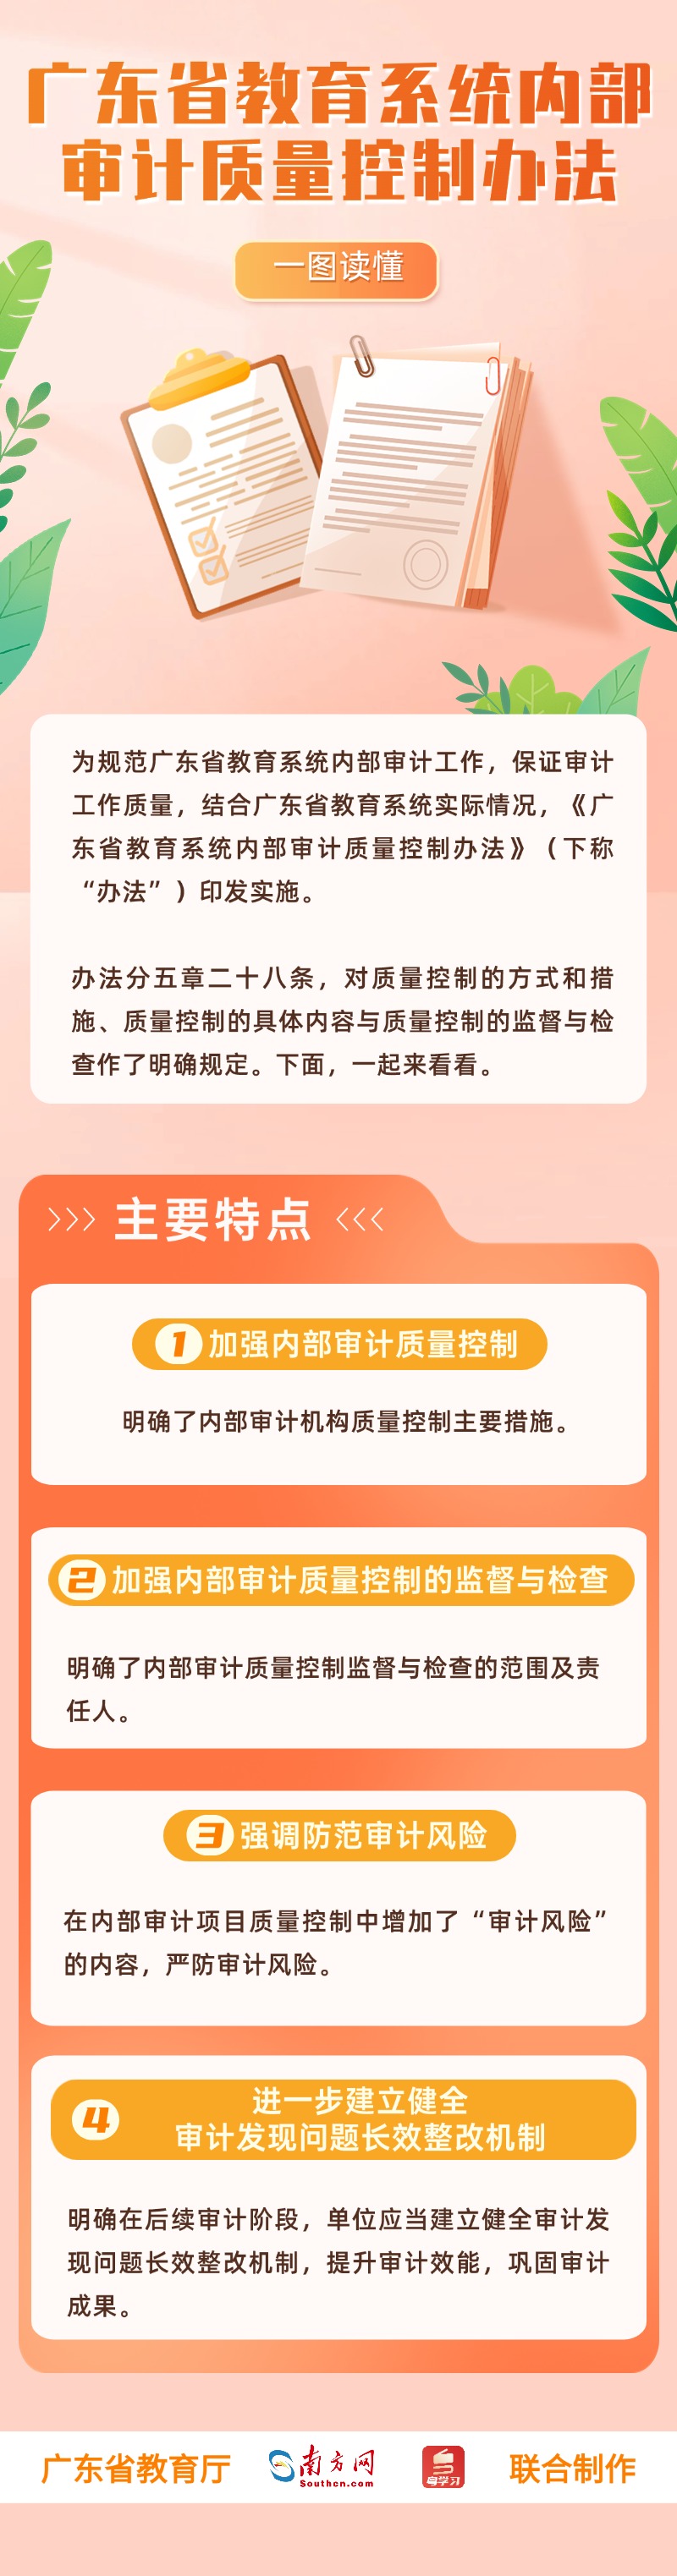 广东省教育系统内部审计质量控制办法.jpg